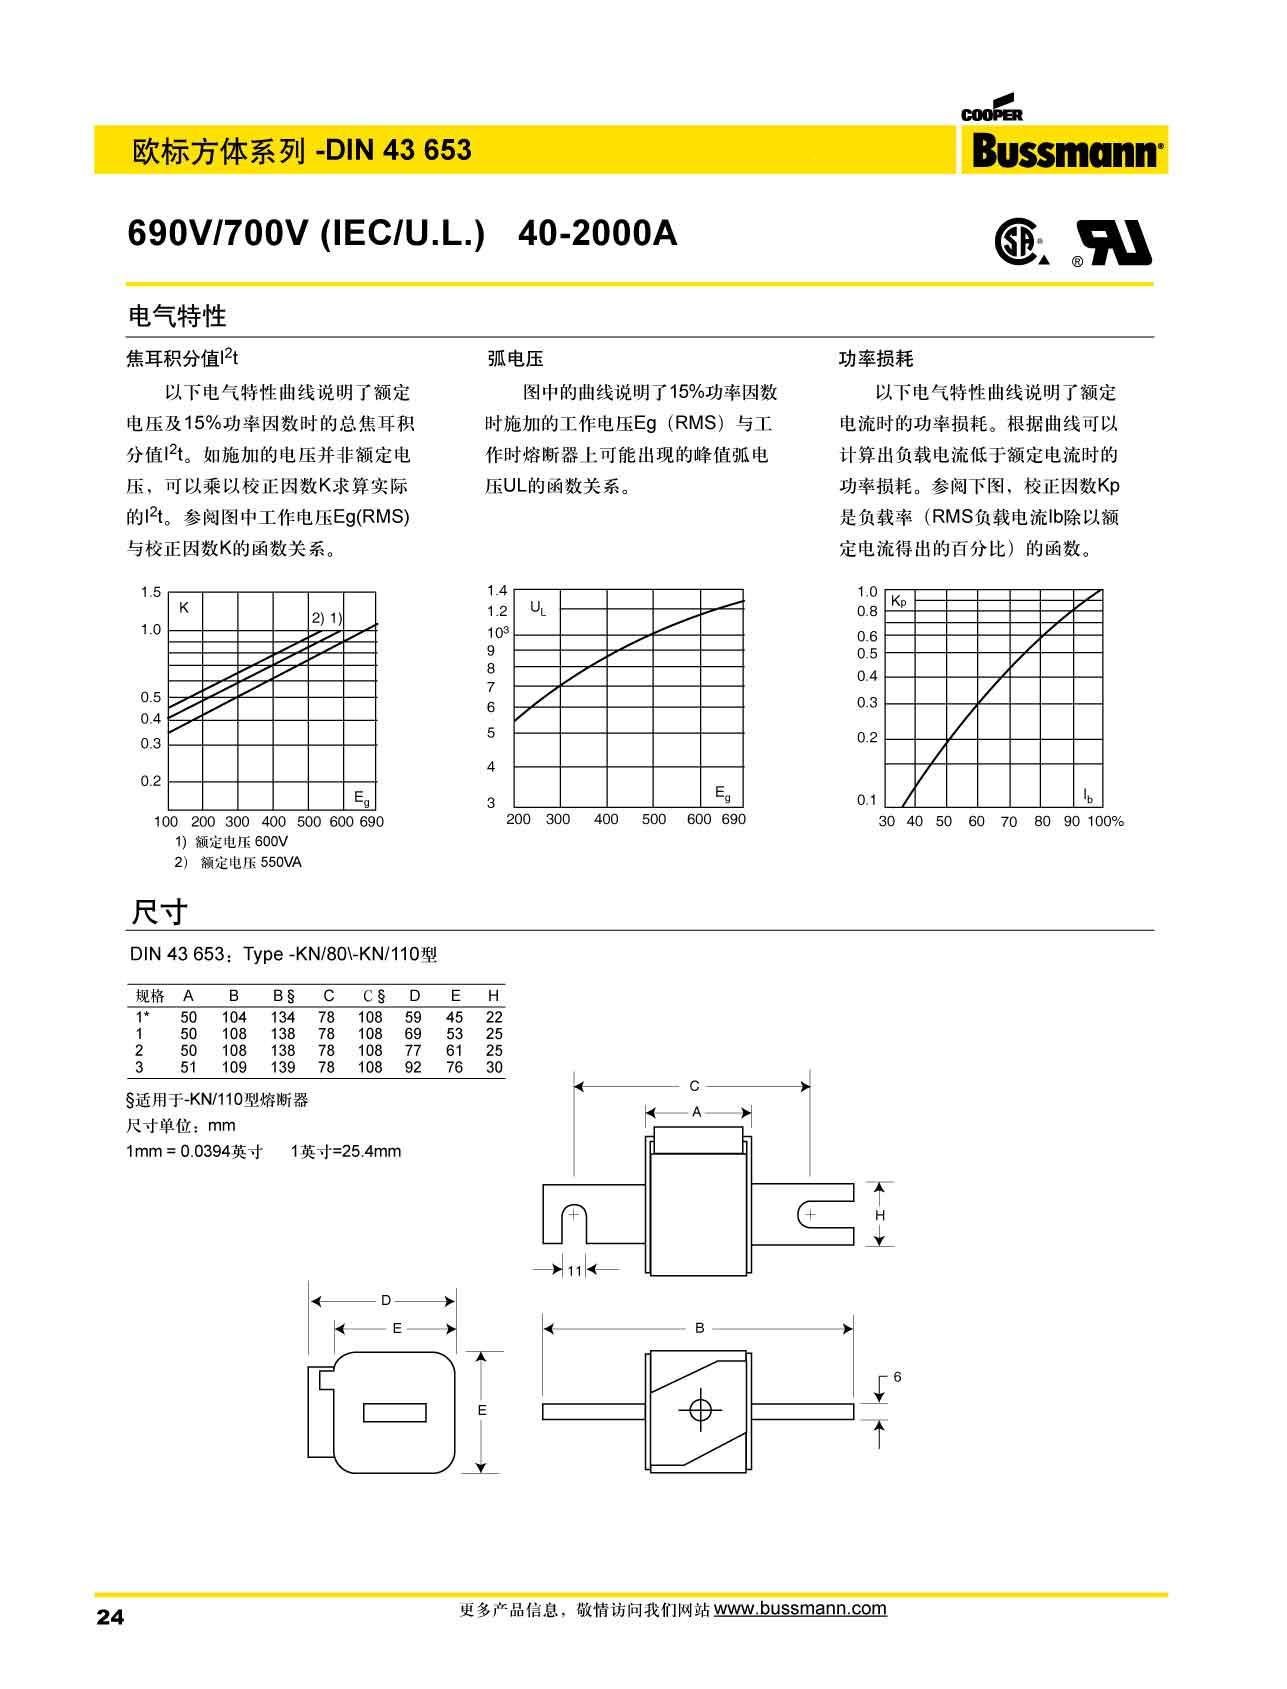 歐標方體DIN43653 690V熔斷器 電氣特性 產品尺寸圖